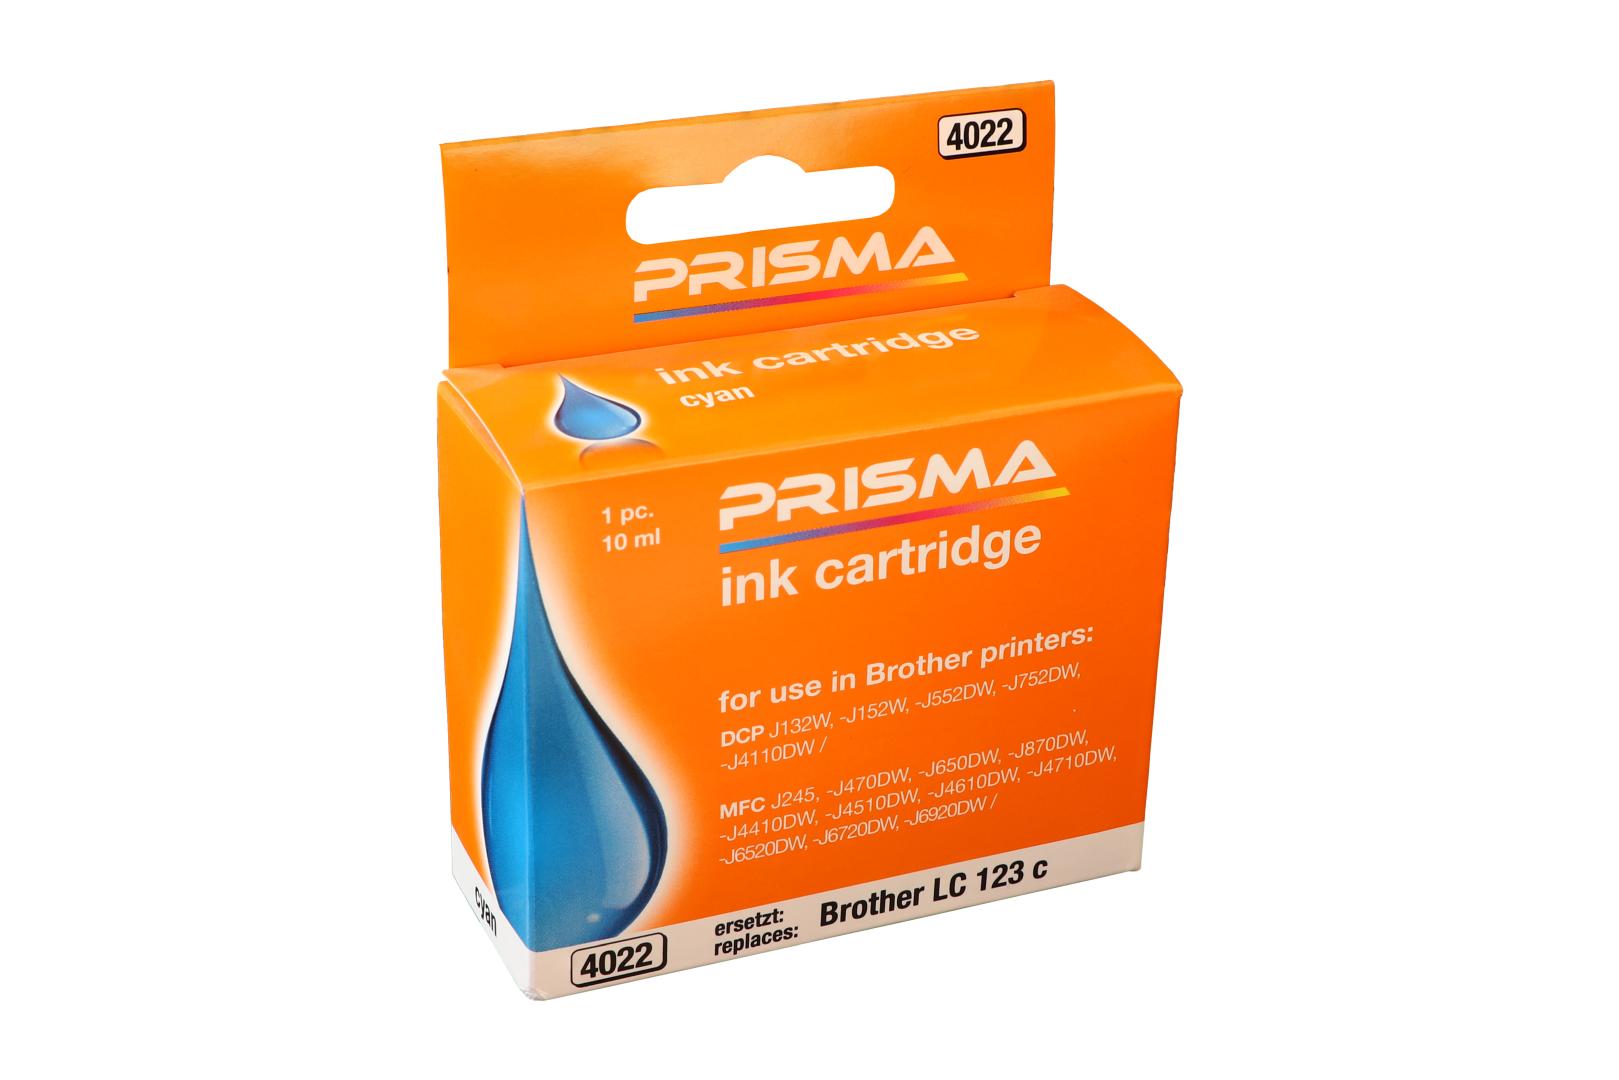 PRISMA 4022 Druckerpatrone für Brother Tintenstrahldrucker, cyan, 10 ml